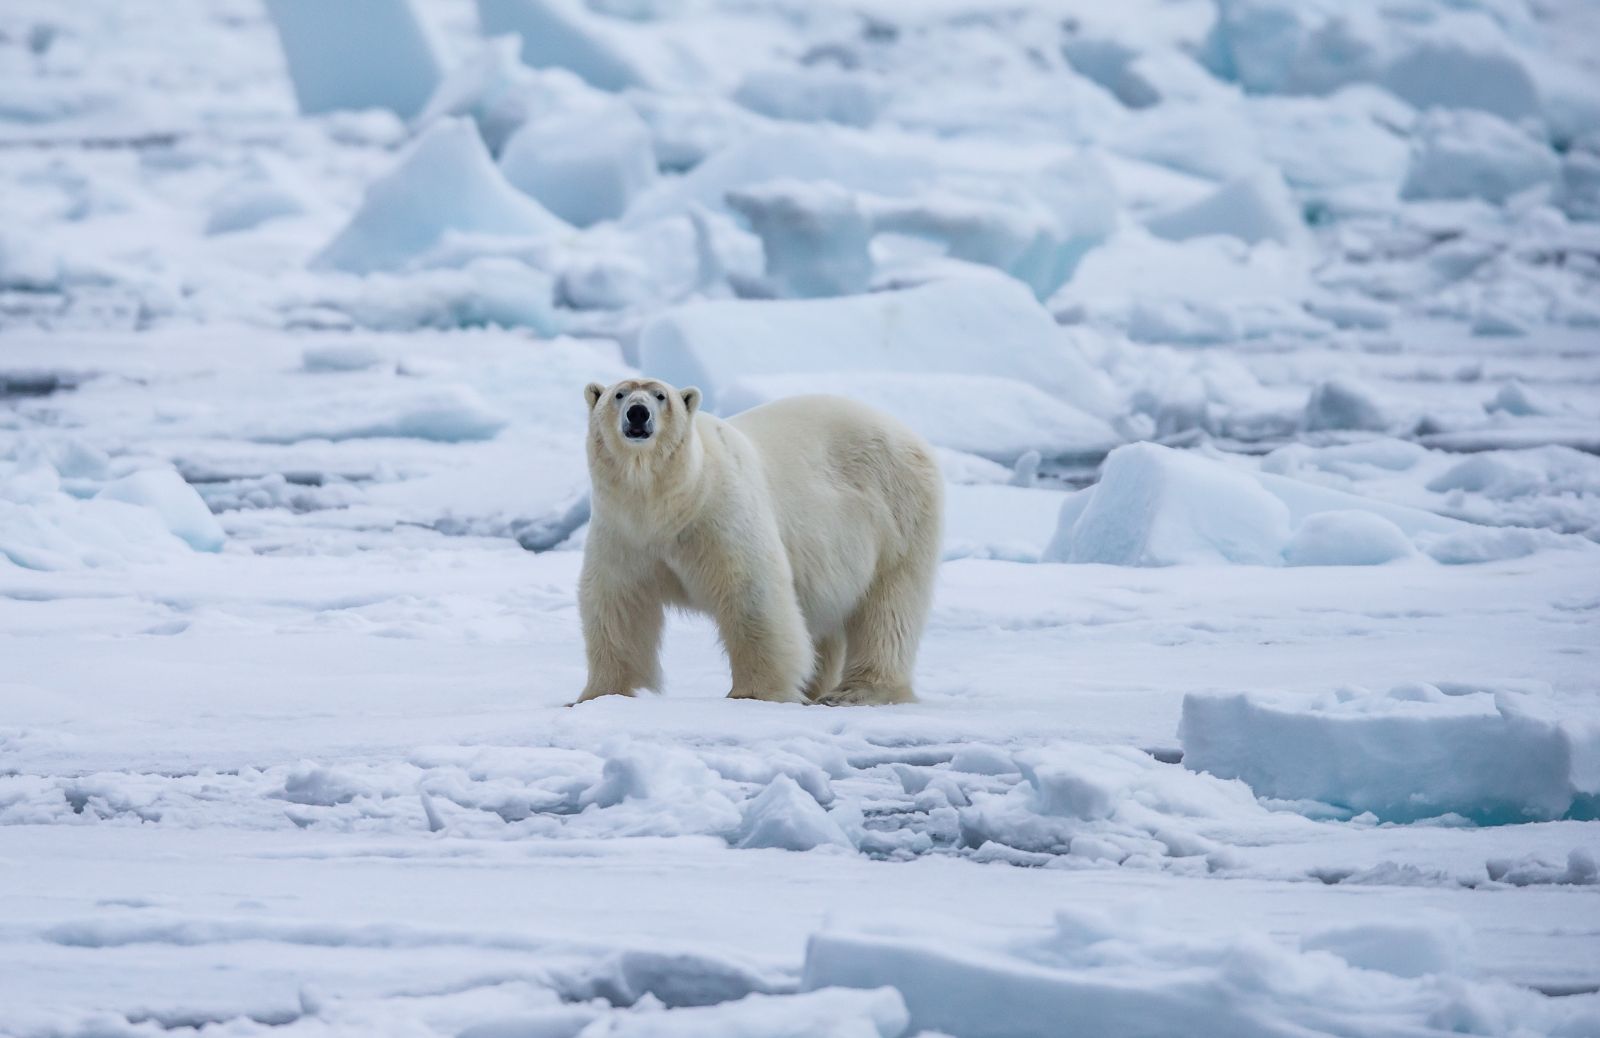 Orso polare: caratteristiche e curiosità